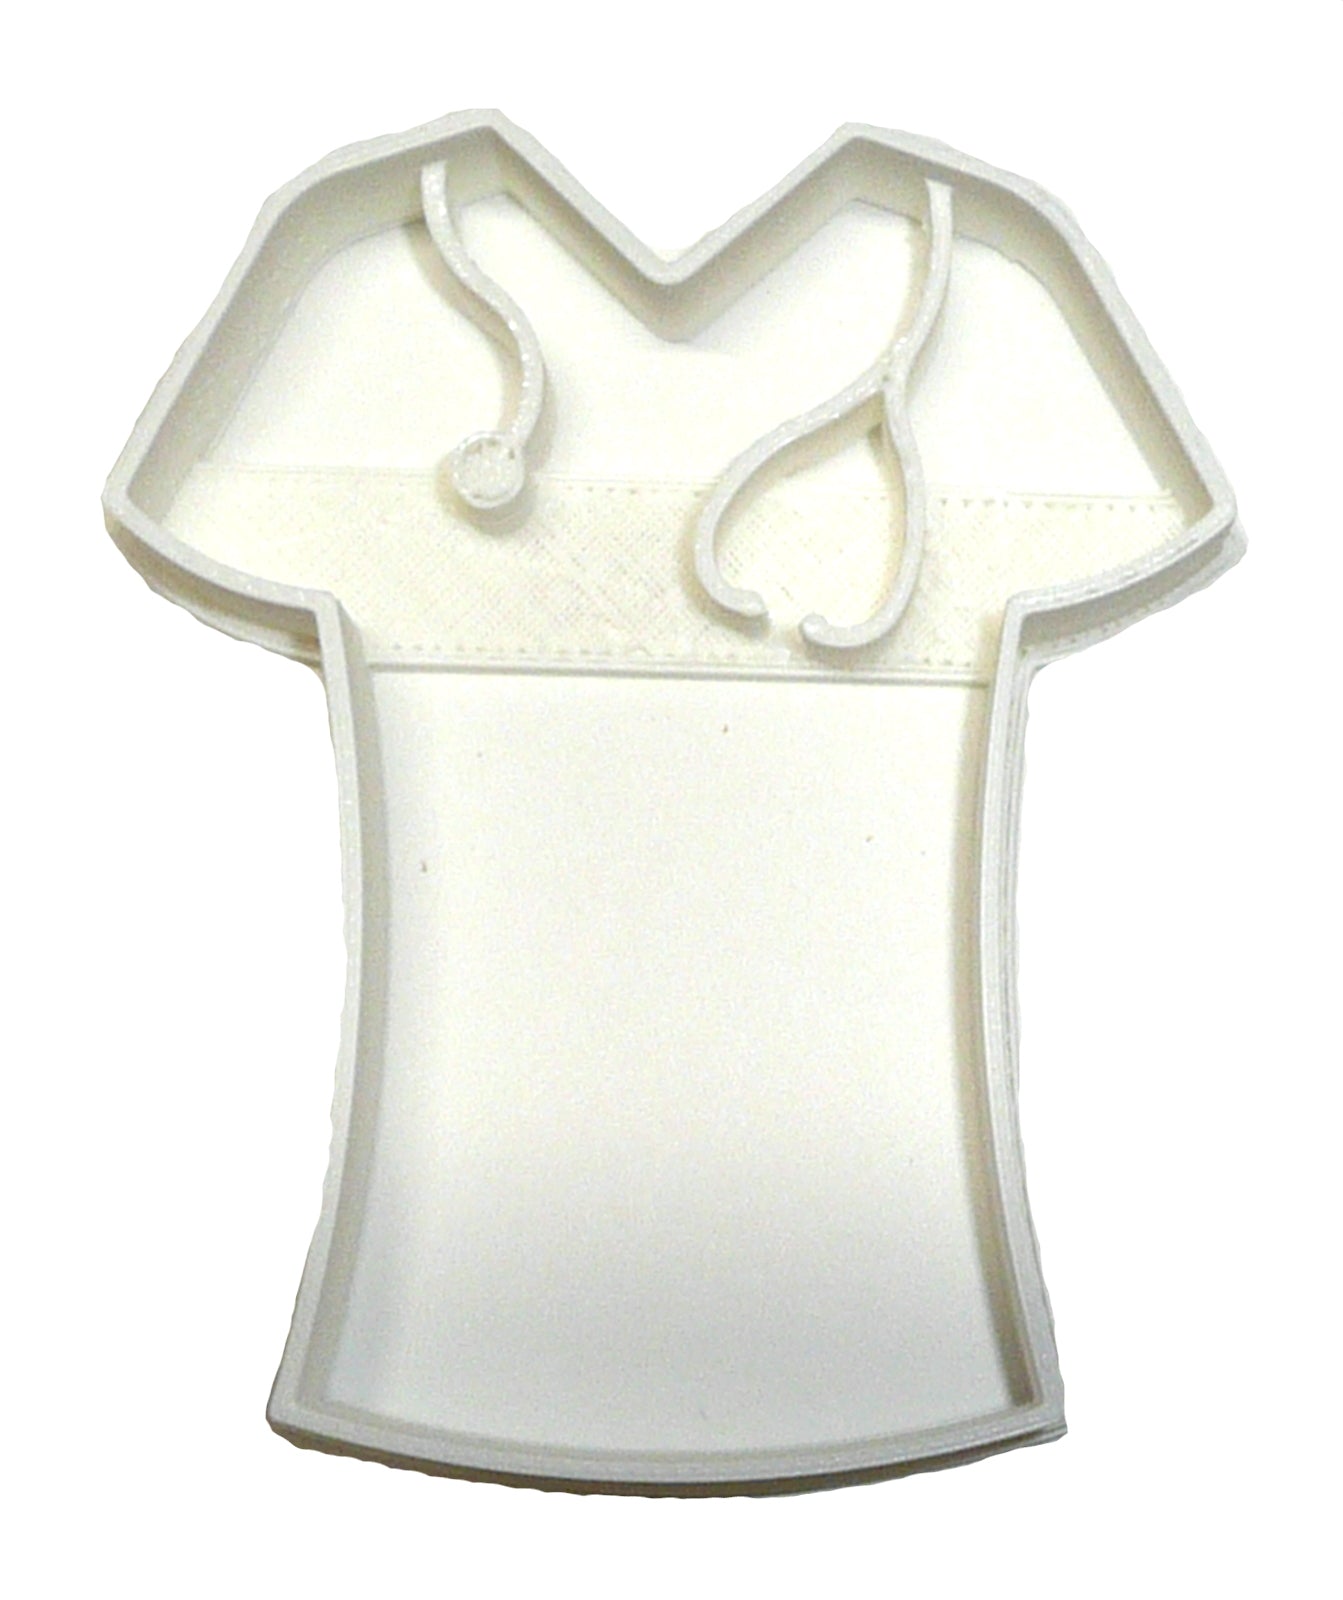 6x Nurse Scrubs Shirt Fondant Cutter Cupcake Topper 1.75" USA FD2180